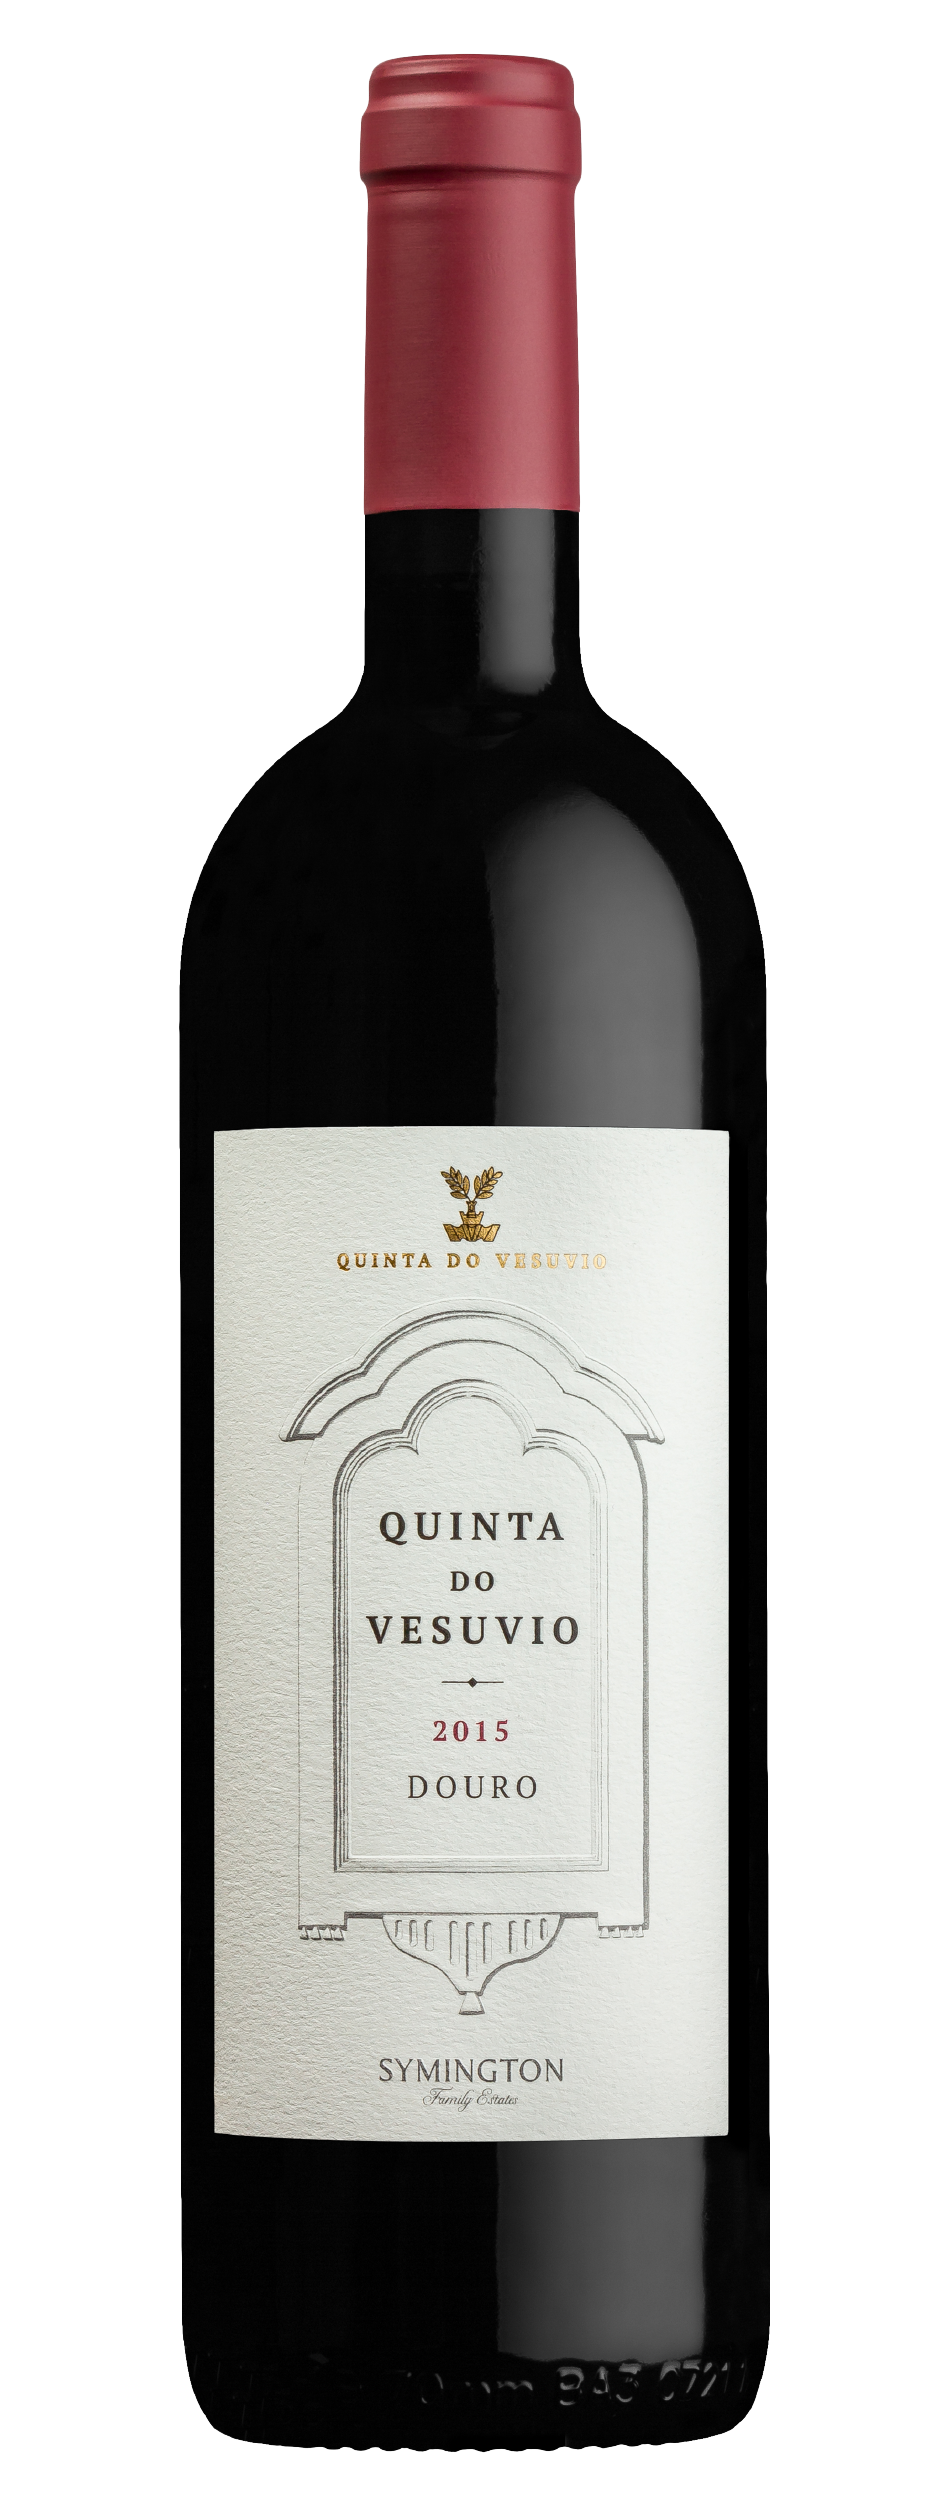 Product Image for QUINTA DO VESUVIO DOURO RED 2015